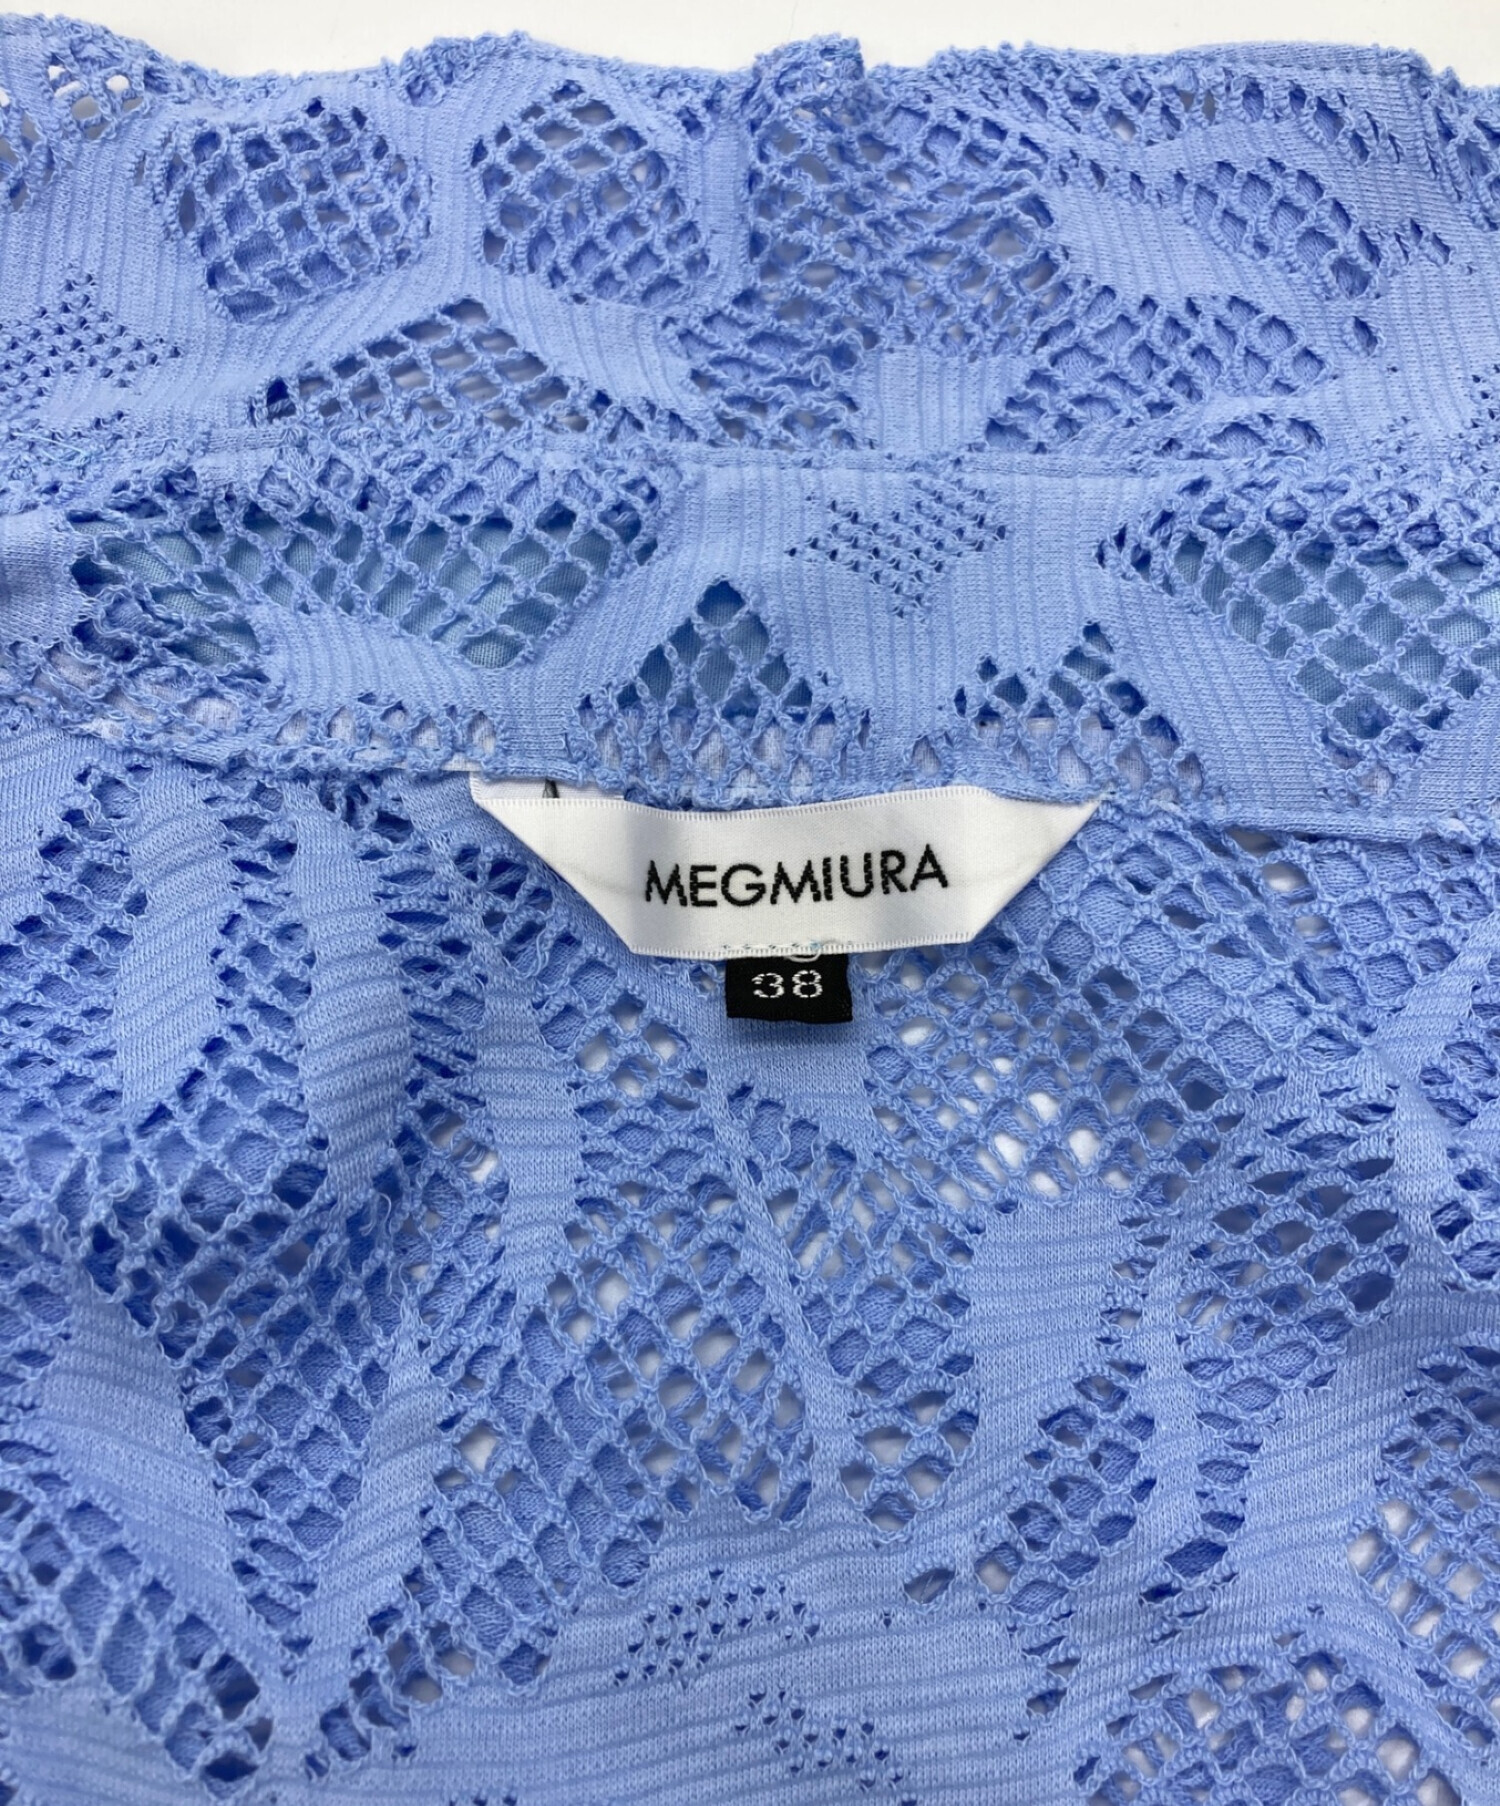 中古・古着通販】MEGMIURA (メグミウラ) Lace Shirts スカイブルー ...